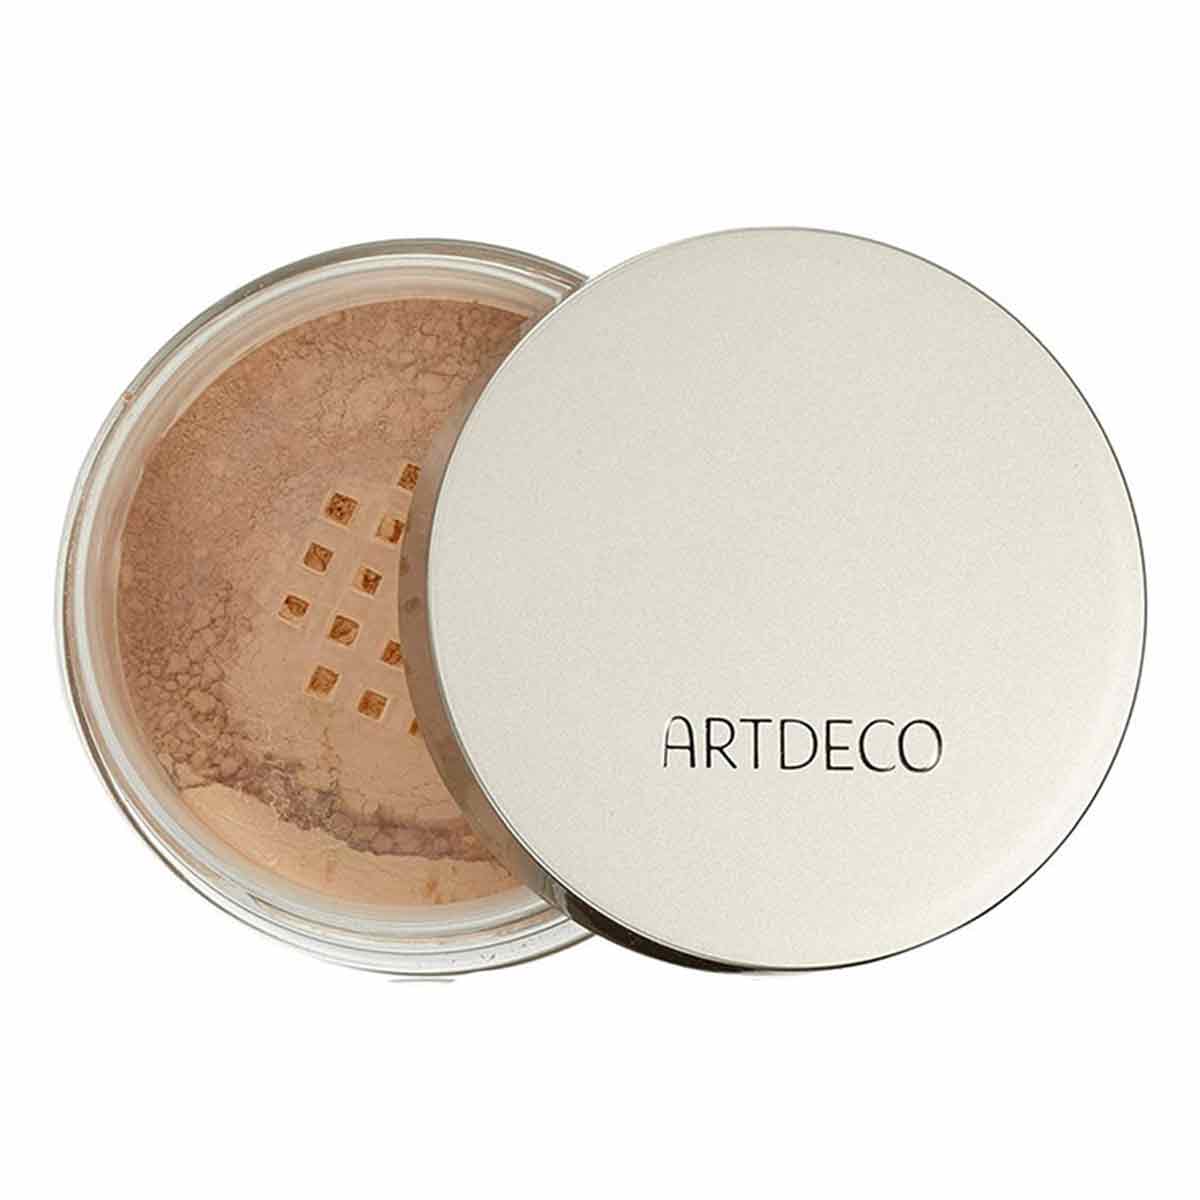 پودر فیکس ( بیک ) شماره 6 تثبیت کننده آرایش آرت دکو ARTDECO مدل Mineral وزن 15 گرم 